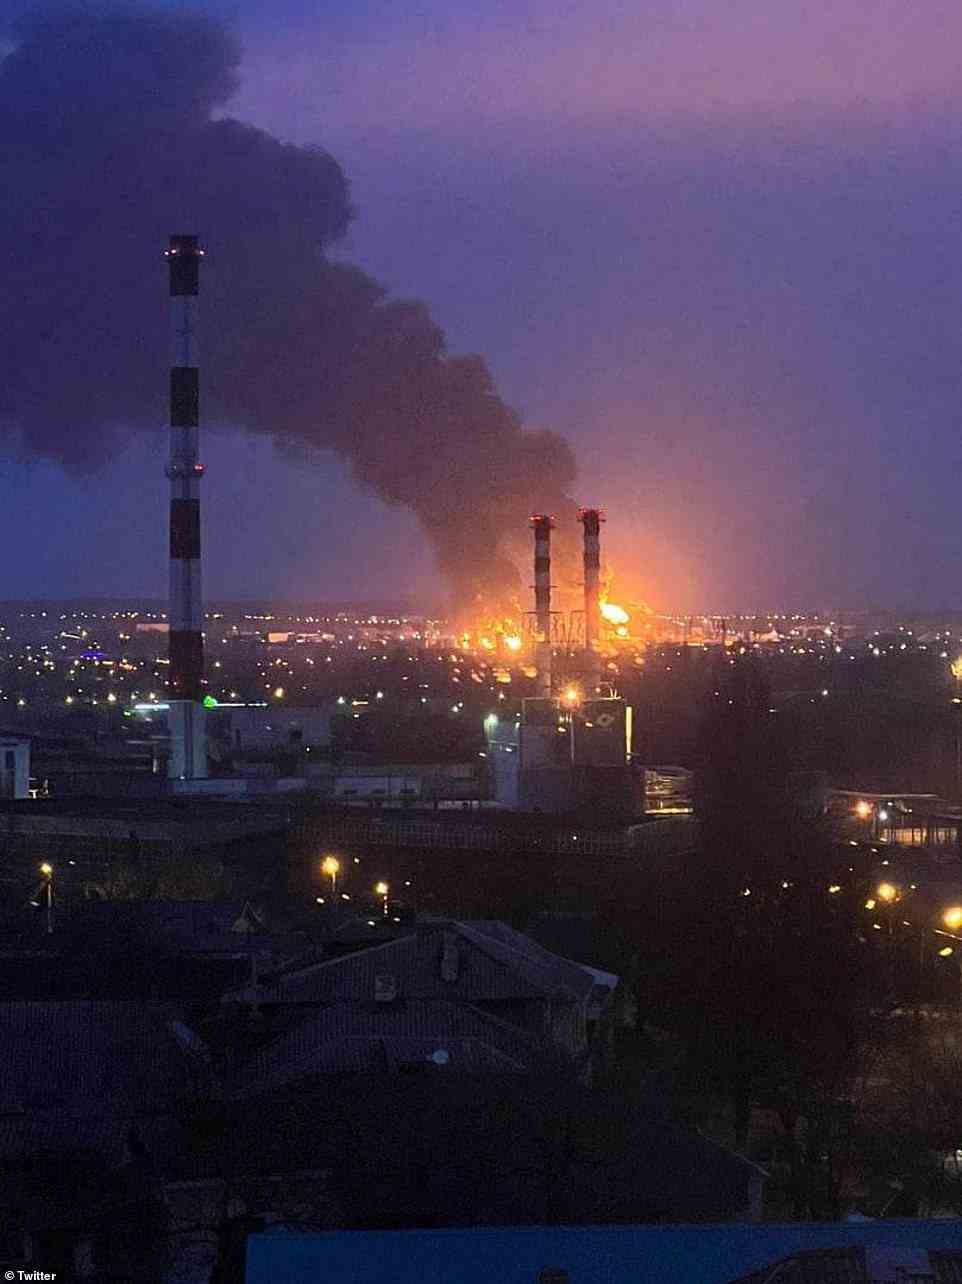 Fotos in den sozialen Medien zeigten, dass die Ölanlage in Belgorod in den frühen Morgenstunden des Freitags in Flammen stand